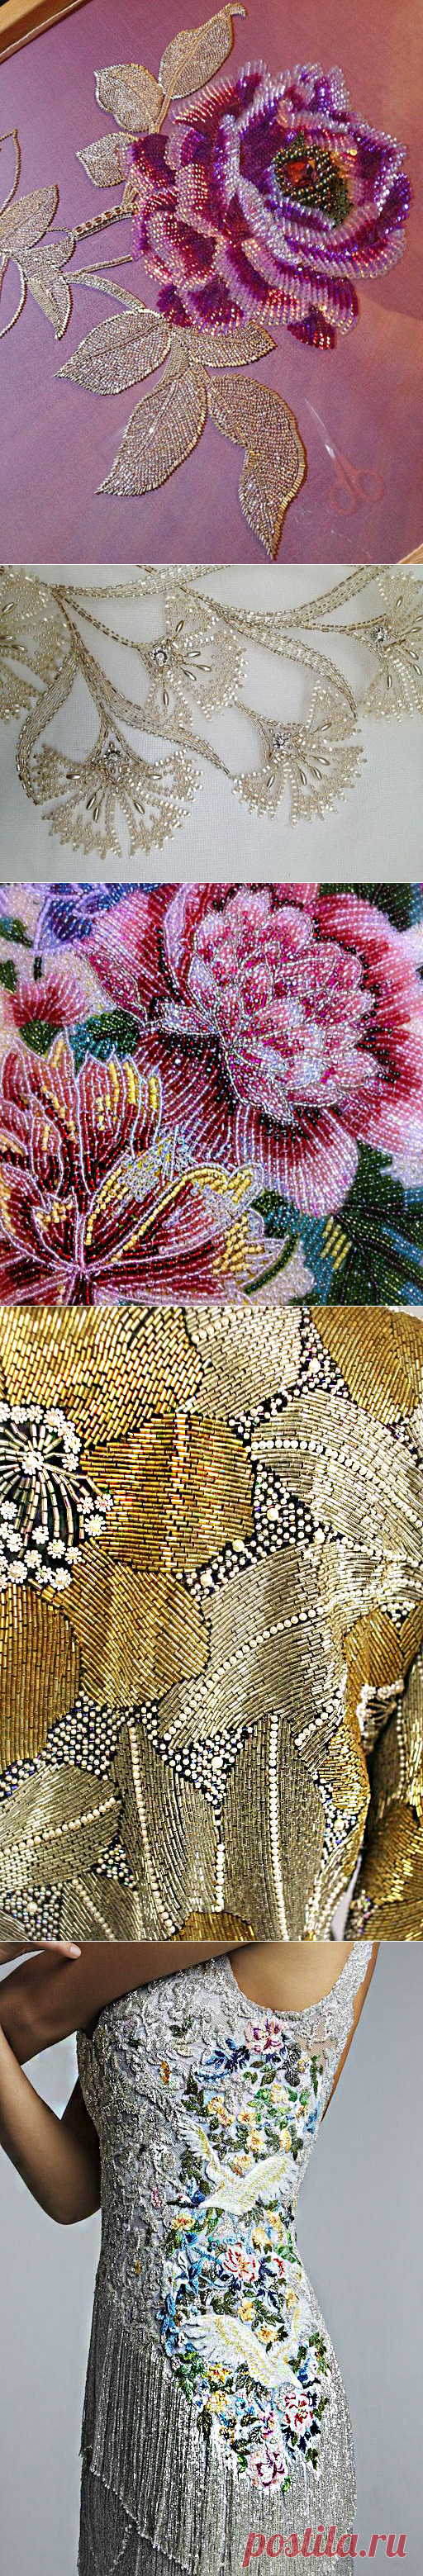 Текстурная вышивка в коллекциях высокой моды. Цветочные мотивы - Ярмарка Мастеров - ручная работа, handmade